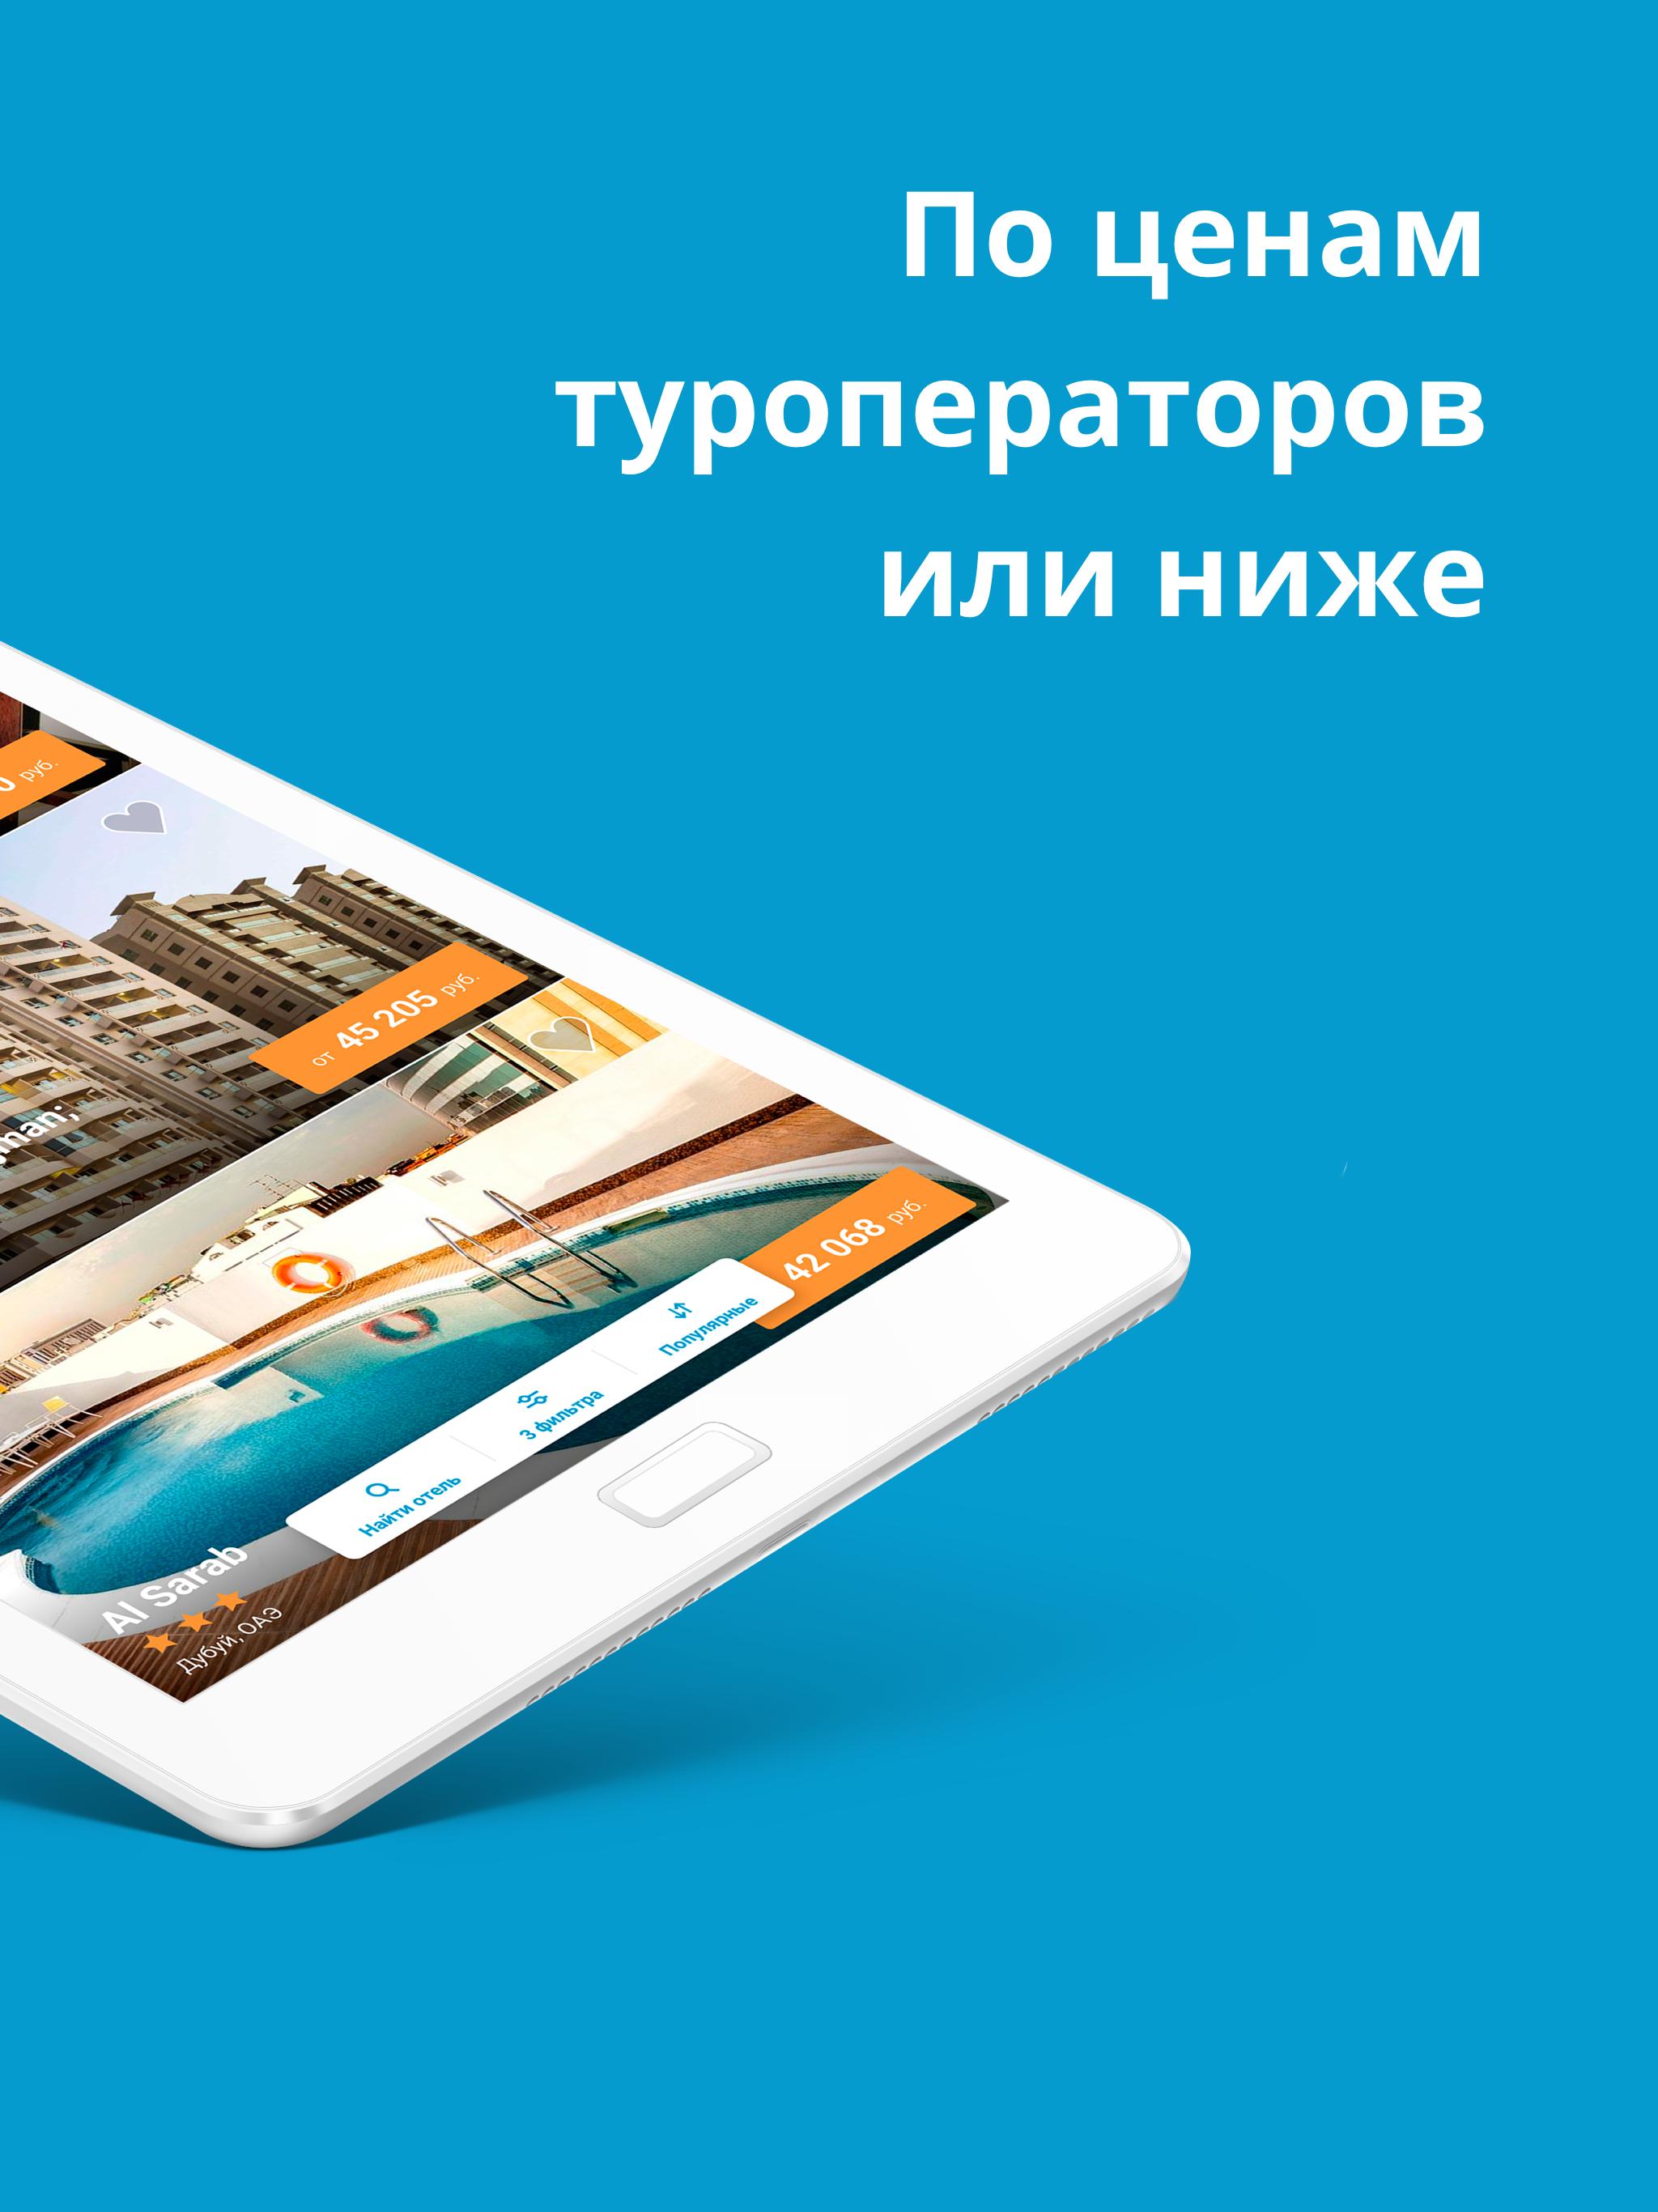 Travelata.ru Все горящие туры и путевки онлайн 3.6.7 Screenshot 7